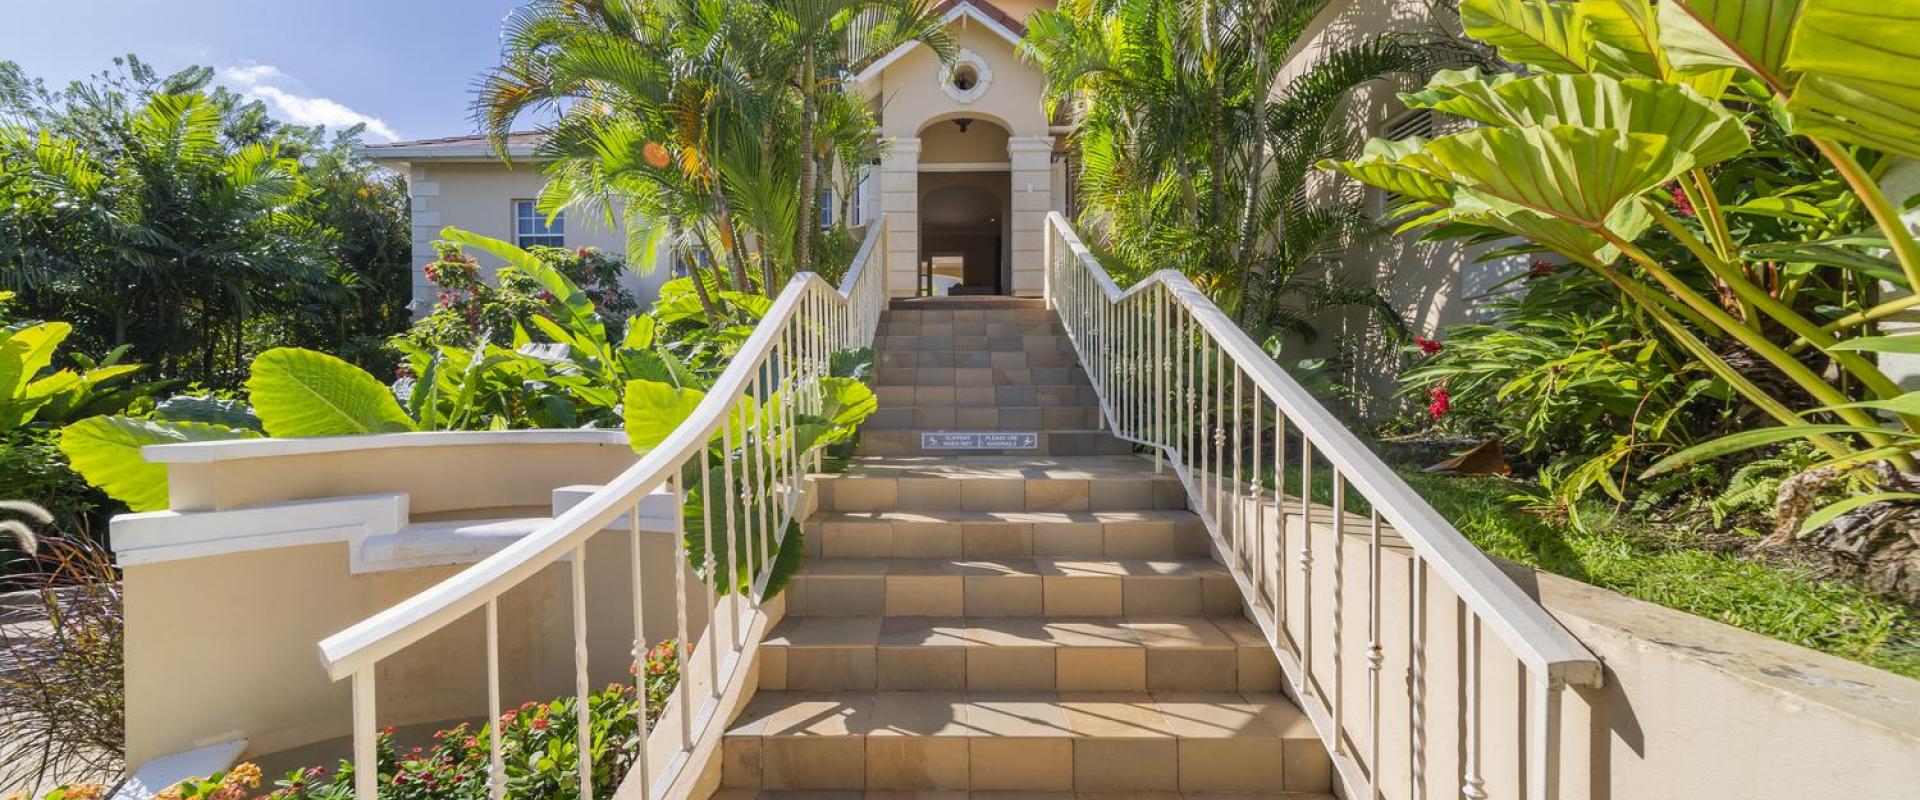 Tara Barbados 4 Bedroom Holiday Rental Villa Main Stairs